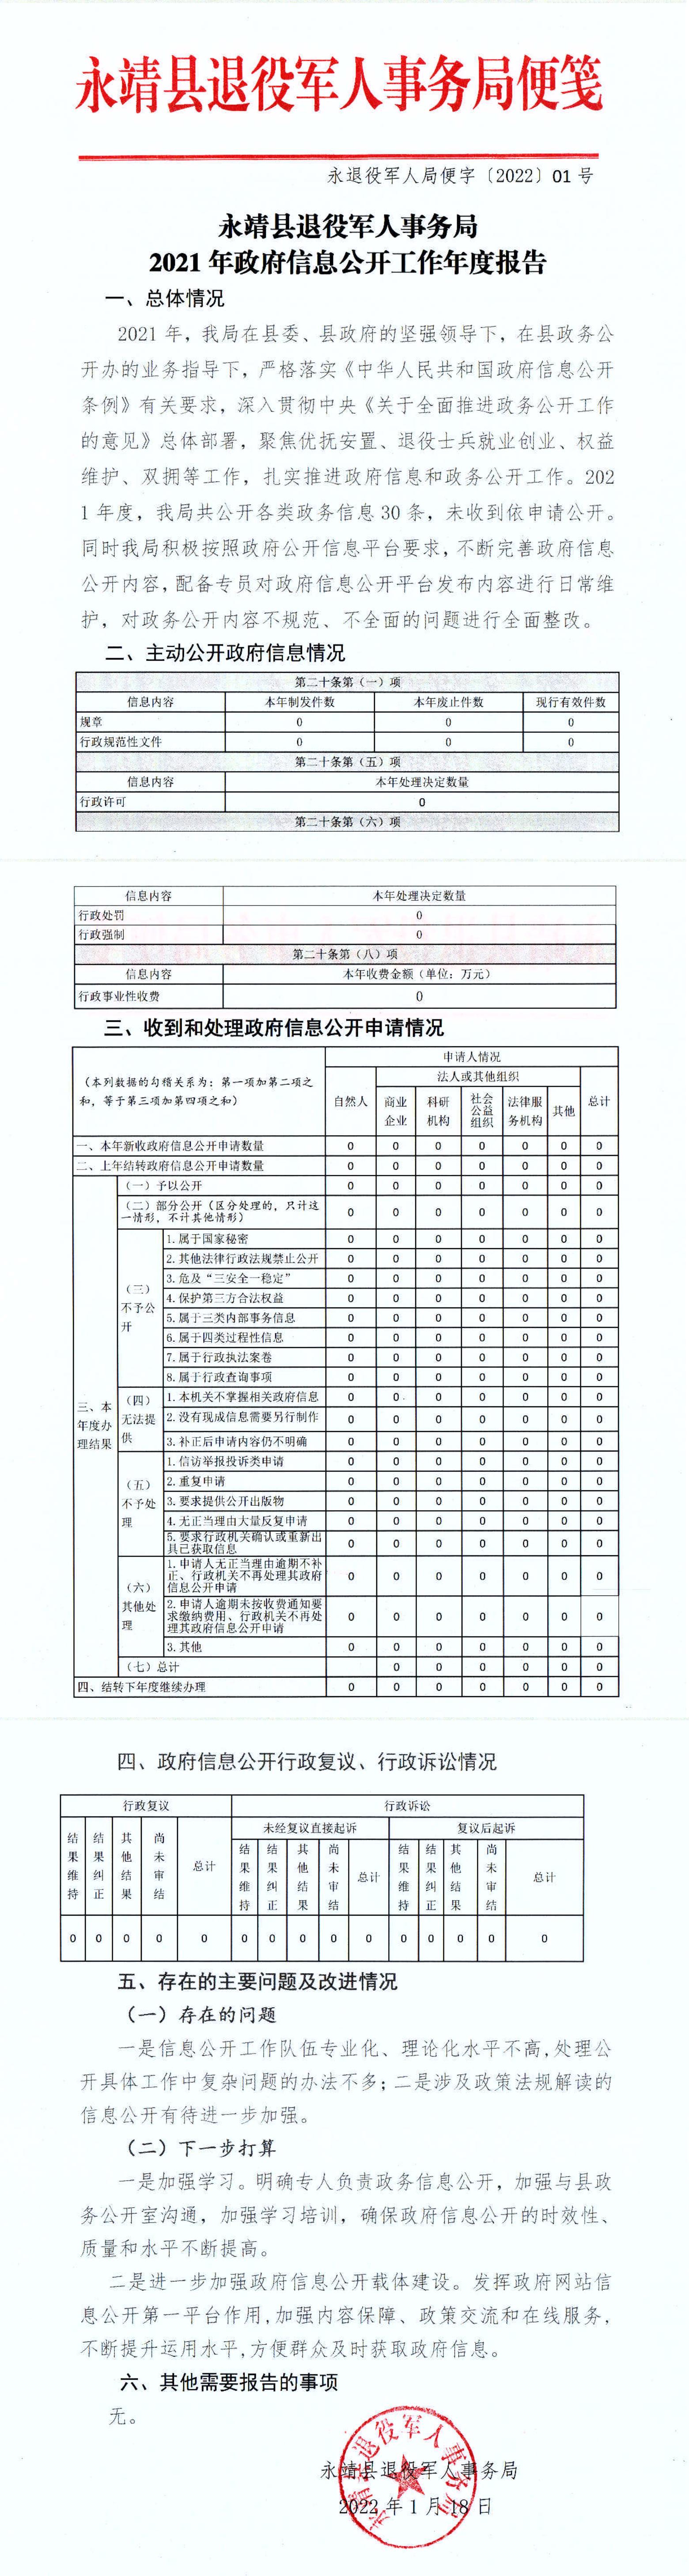 2021年县退役军人事务局政府信息公开工作报告.jpg